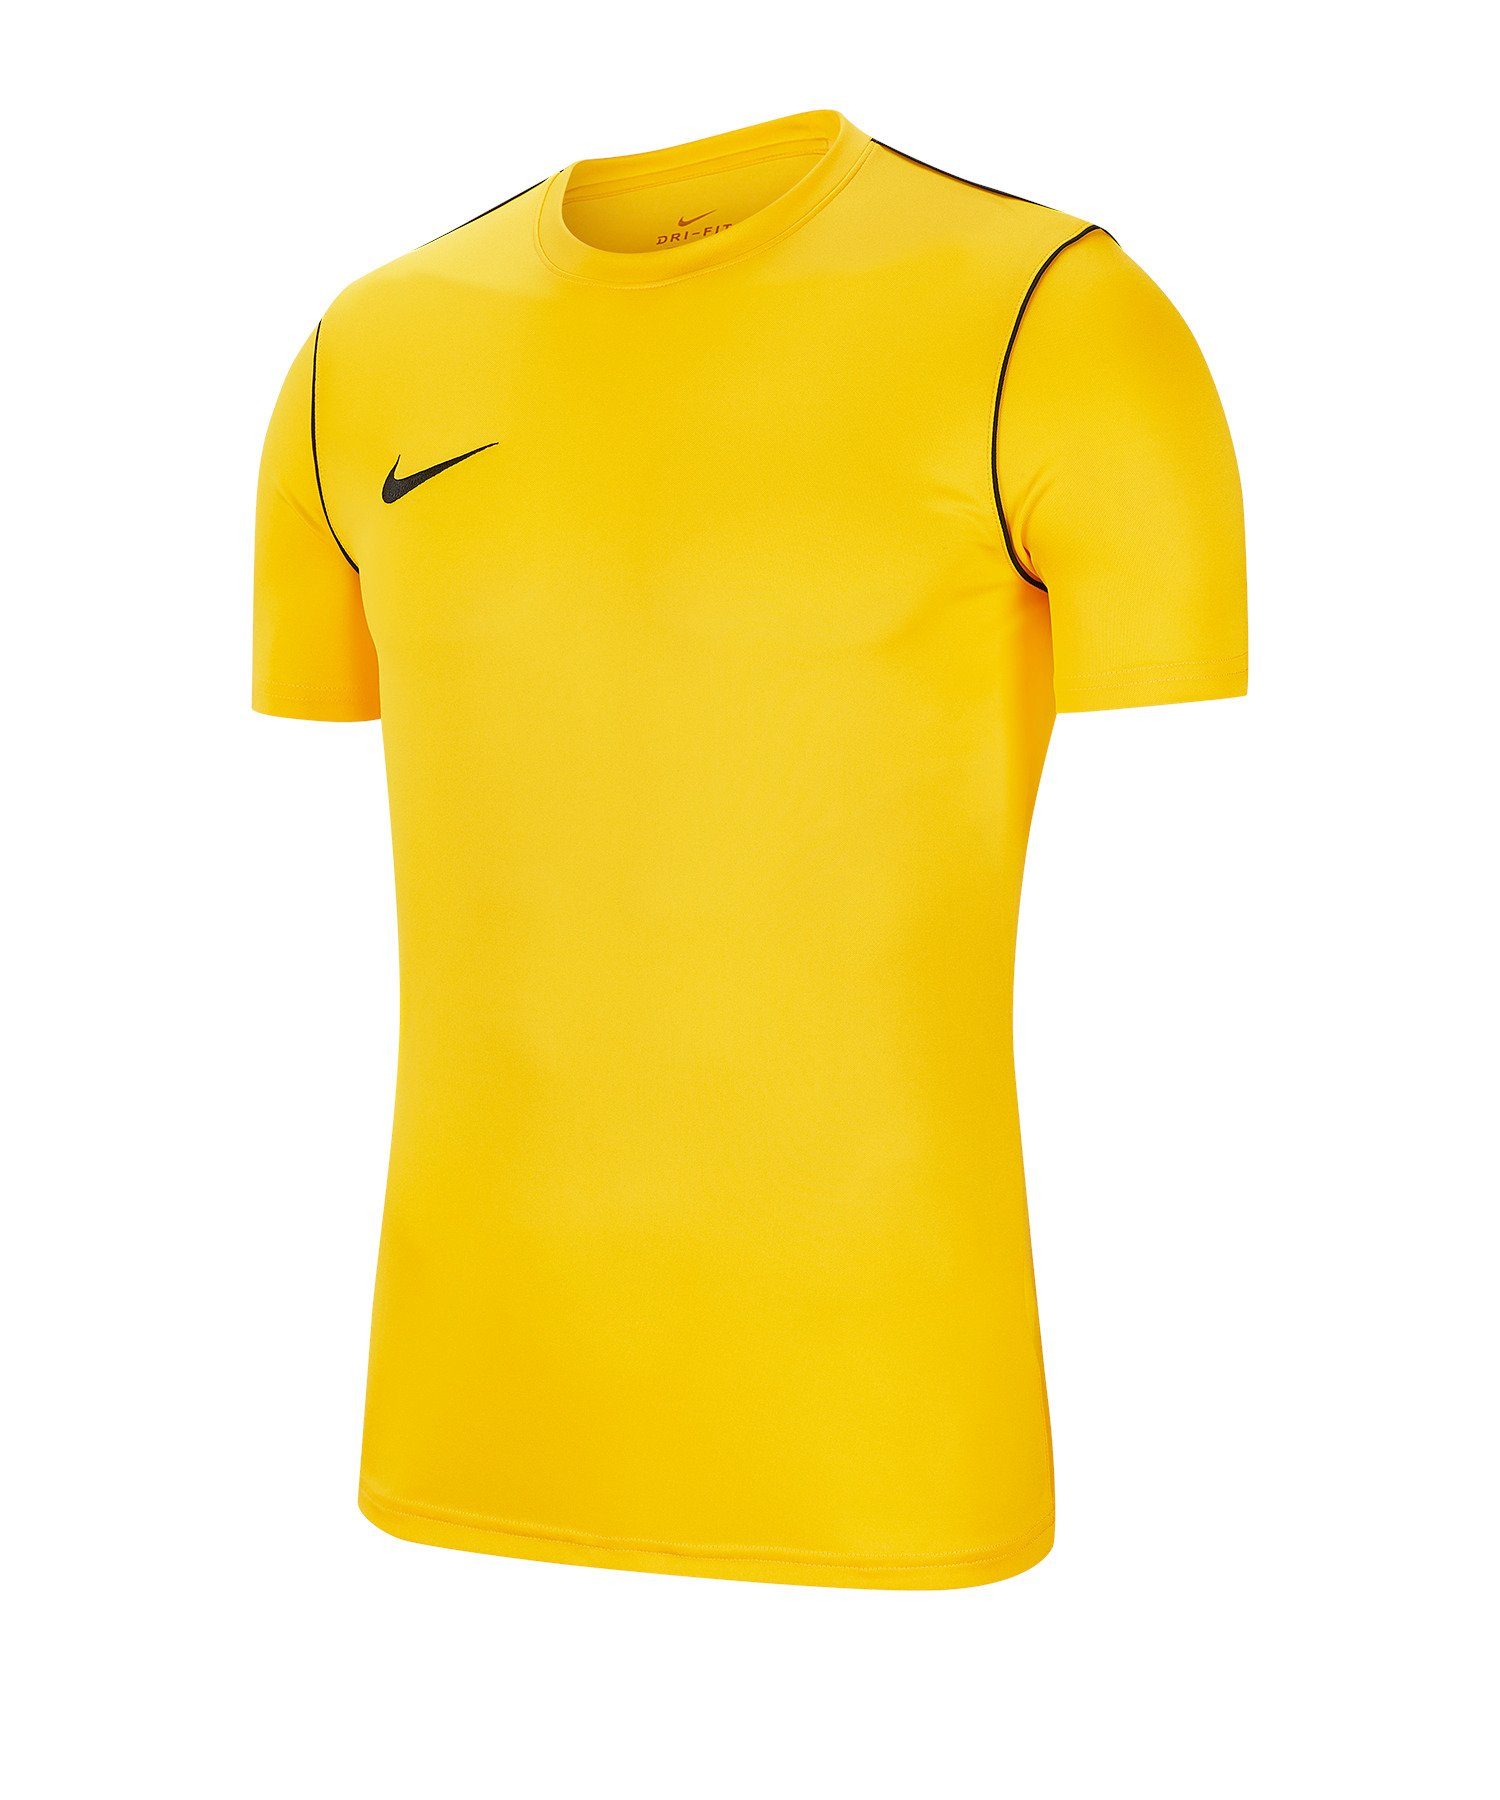 Shirt gelb Nike Training T-Shirt default Park 20